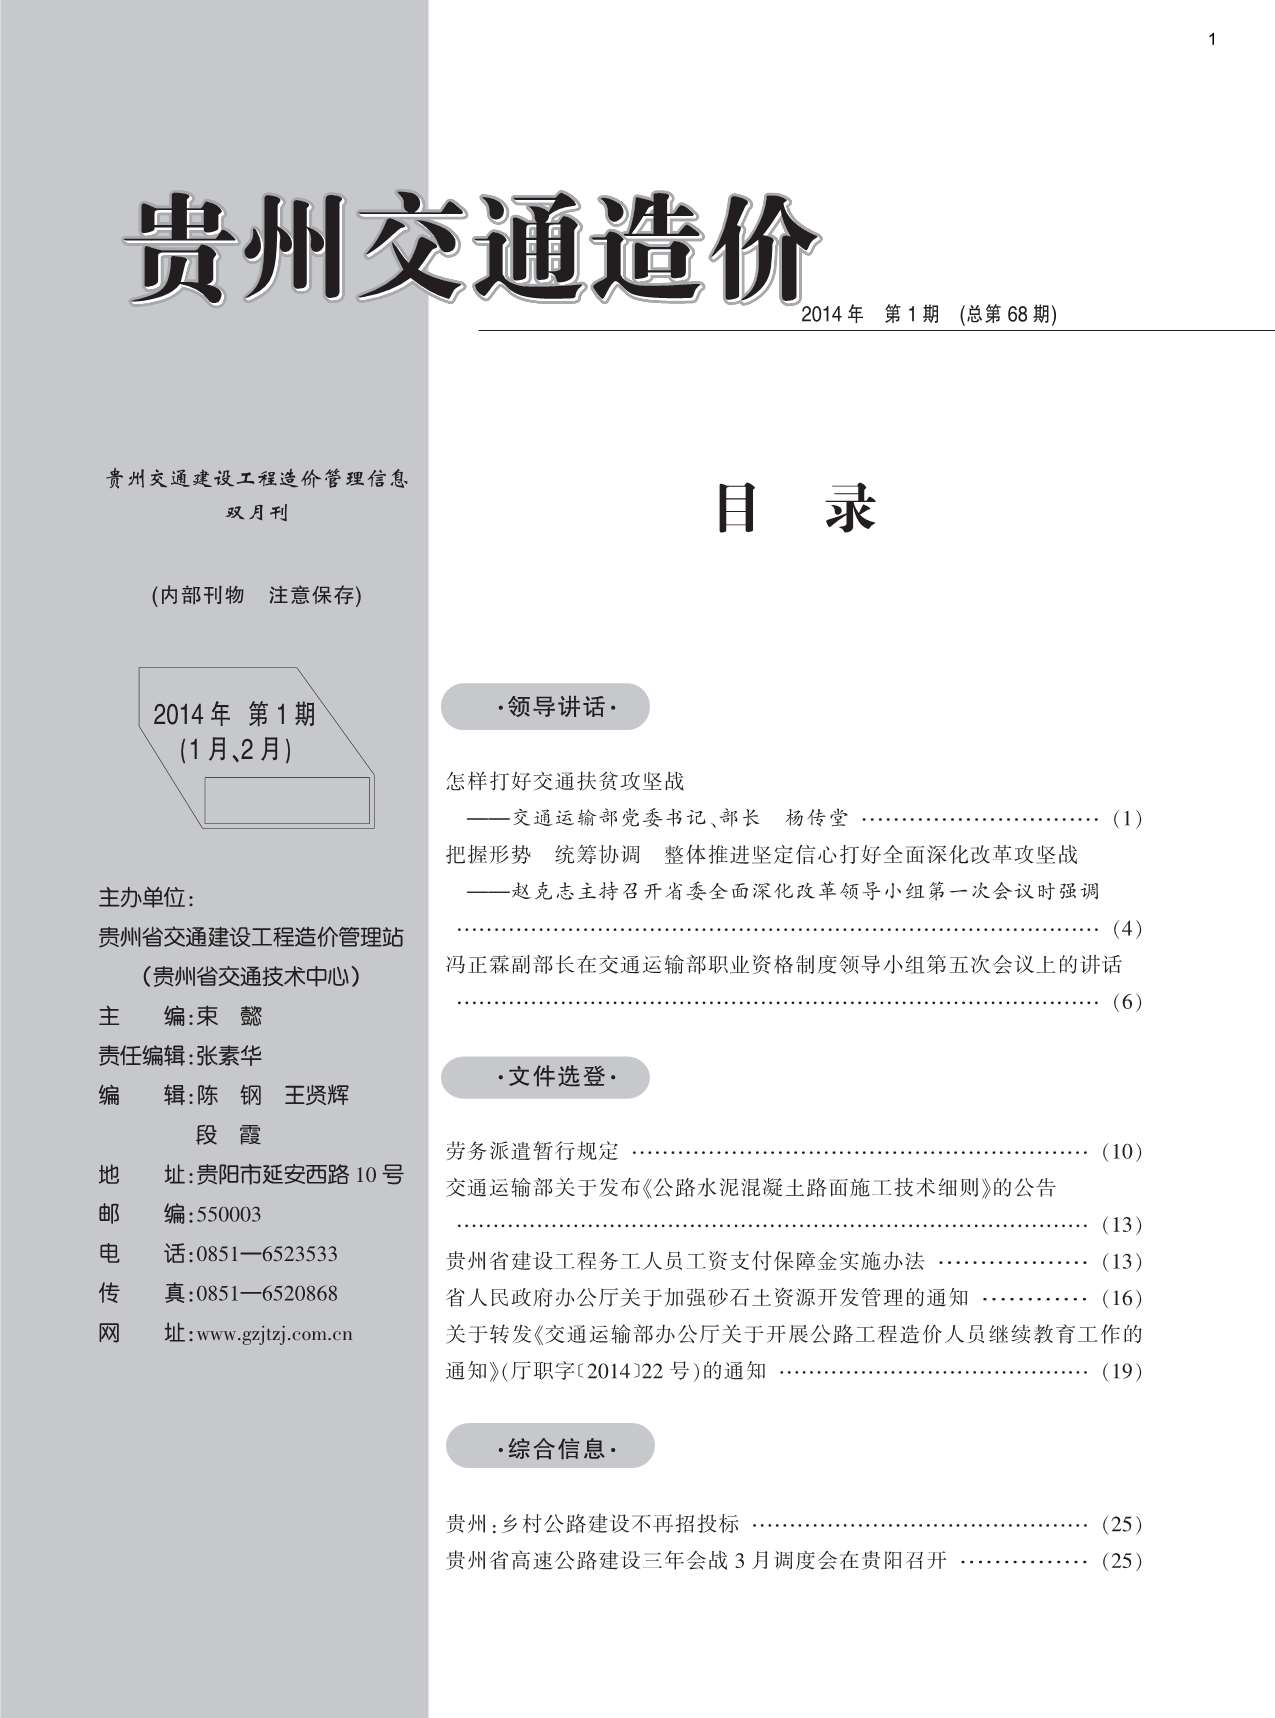 贵州省2014年1月交通公路信息价